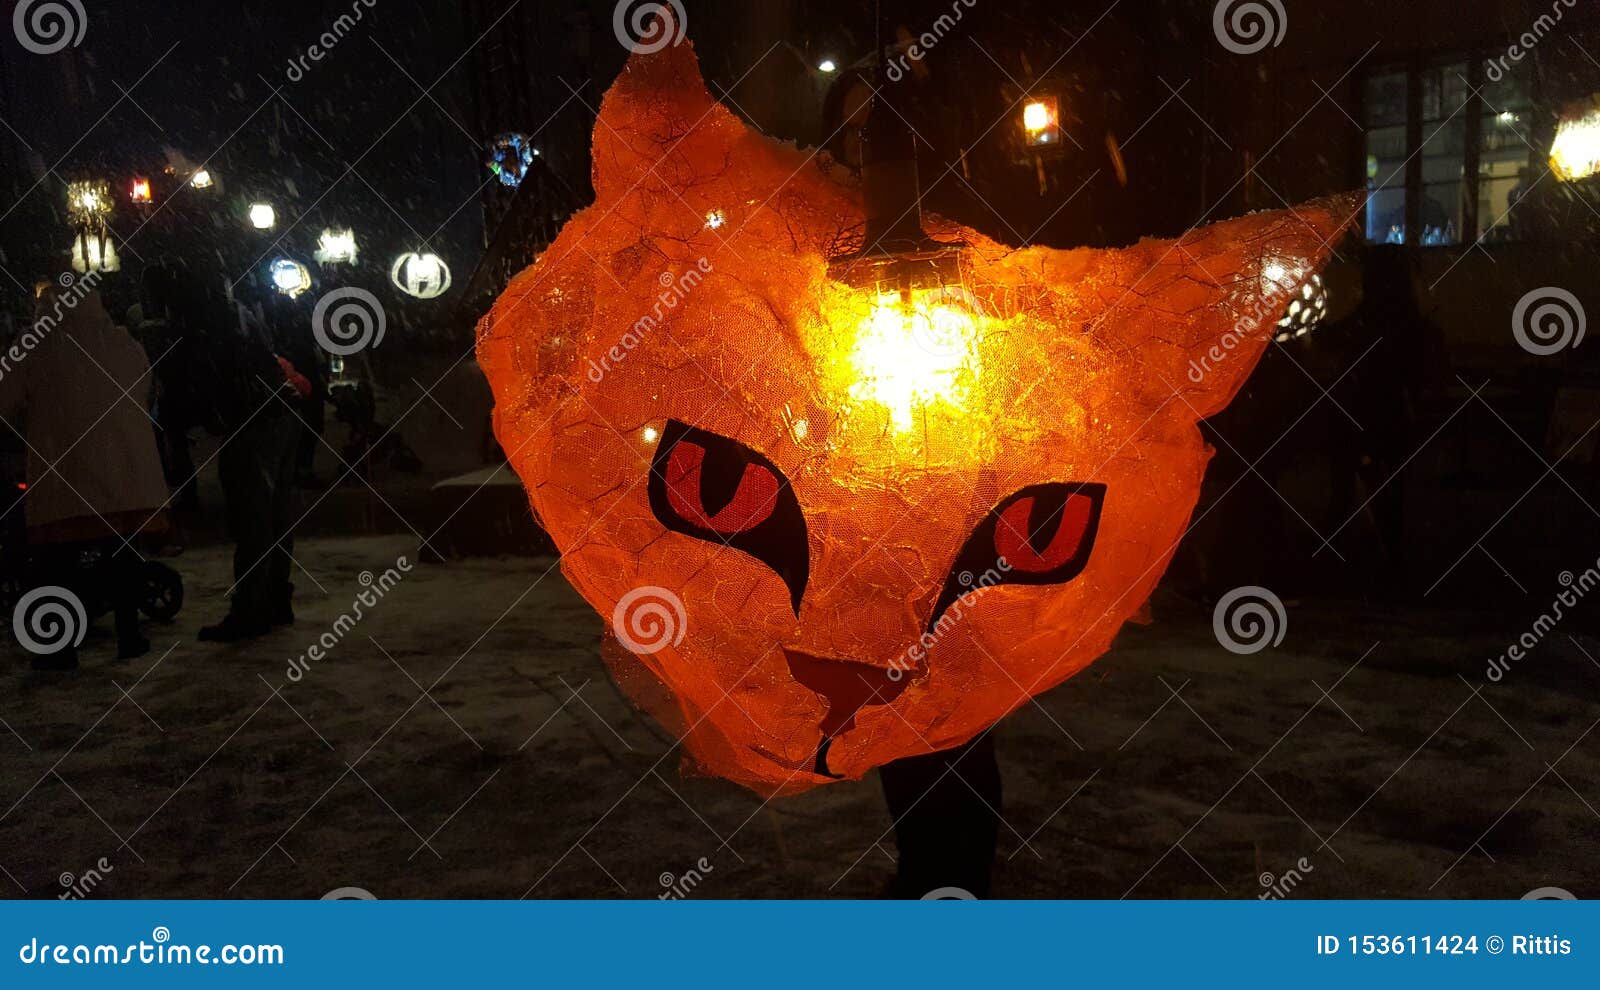 cat lantern in light festival lux helsinki, finland